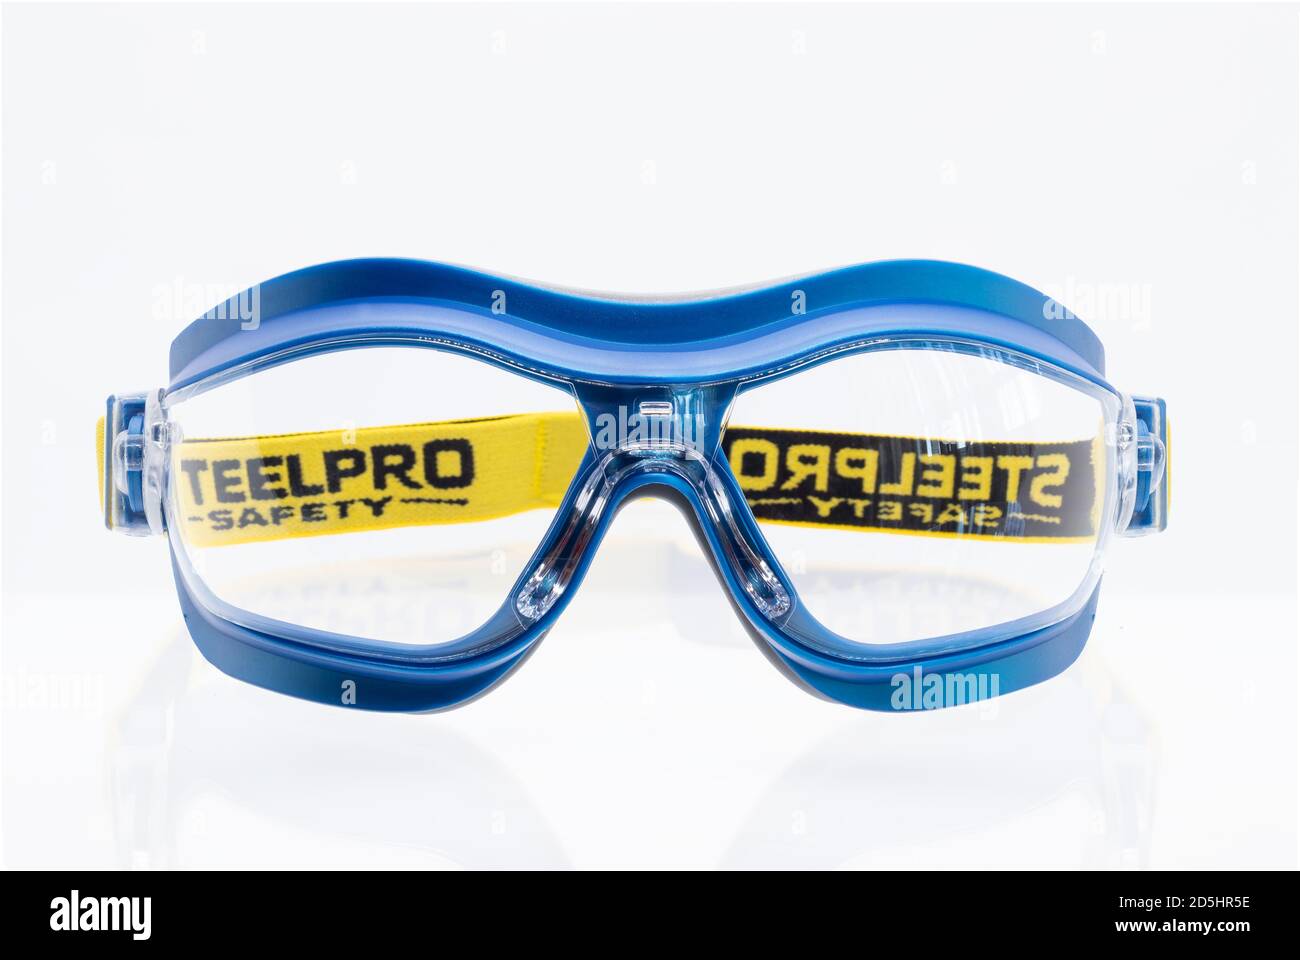 Huelva, Espagne - 13 octobre 2020 : lunettes de sécurité Steelpro Pro Line modèle X7. Lunettes antibuée transparentes à double lentille pour les risques mécaniques. Monter la commode Banque D'Images